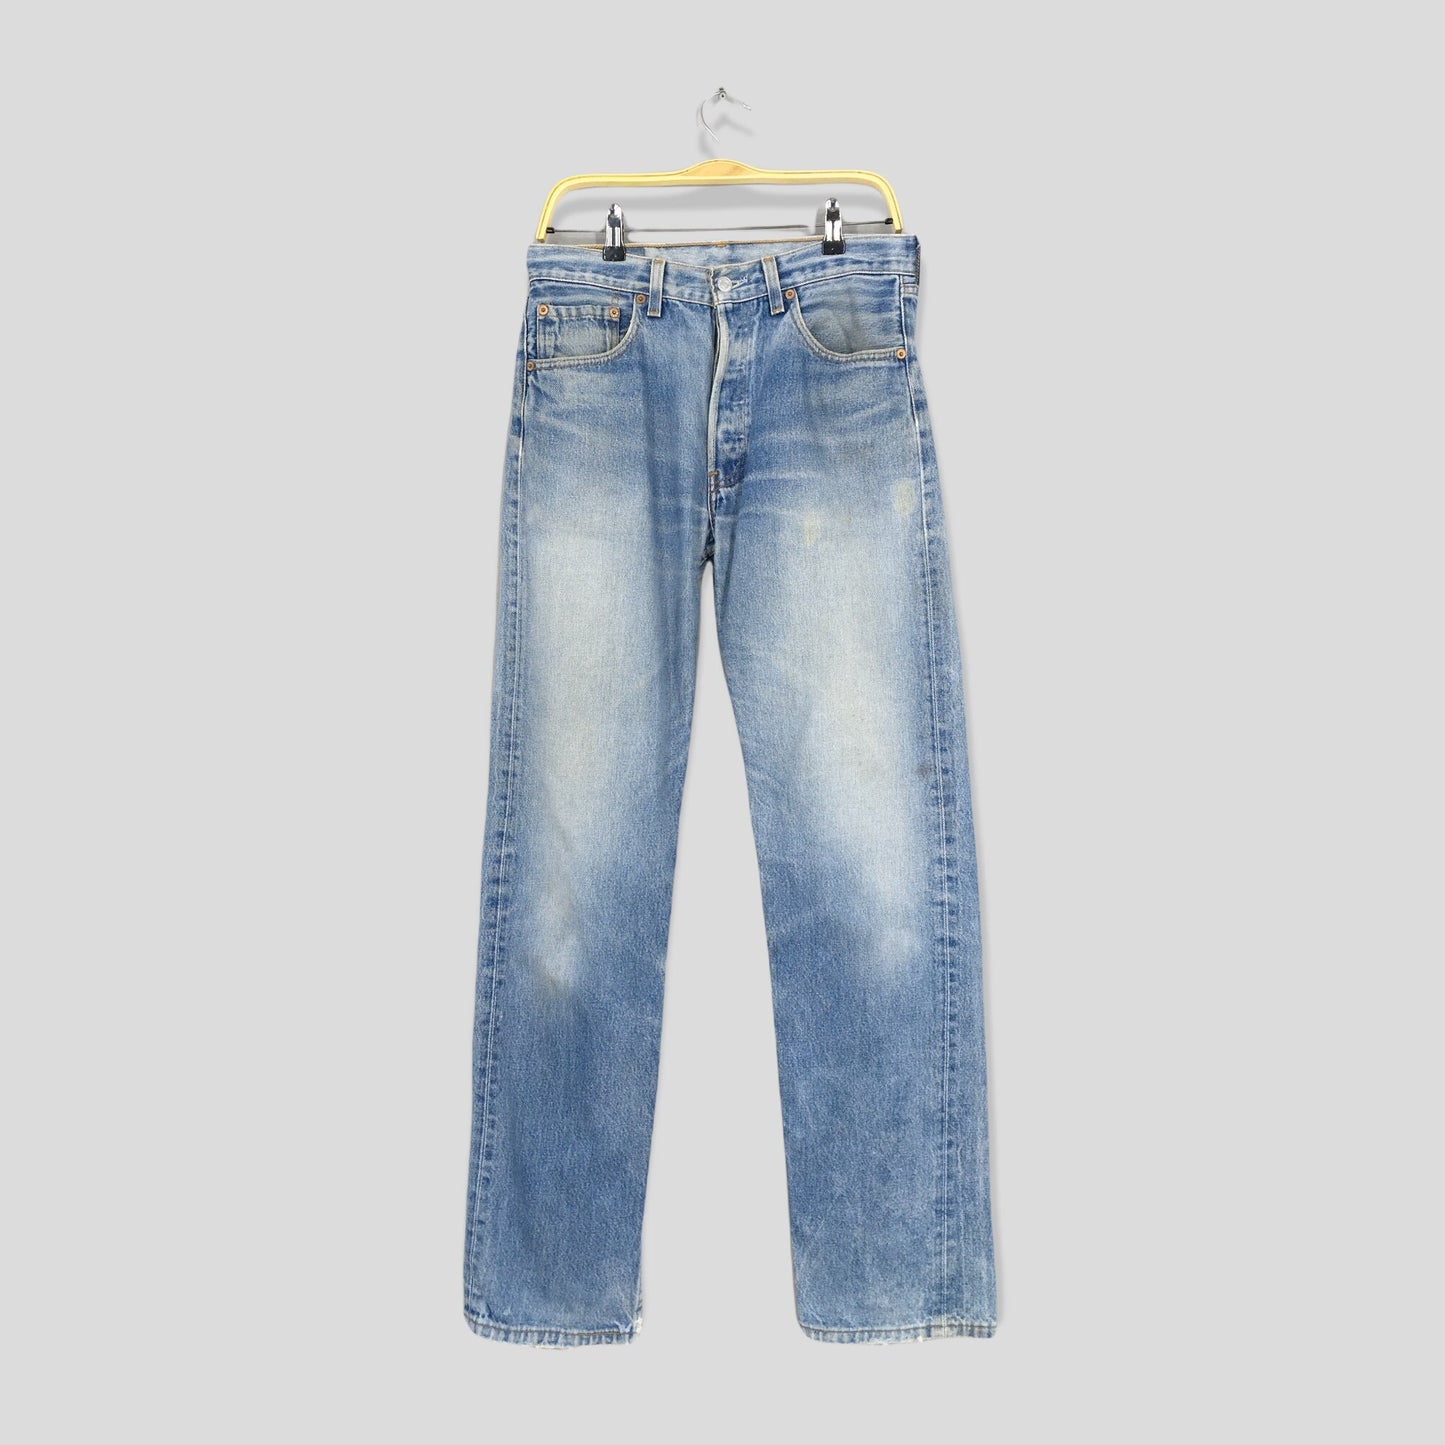 Levis 501XX Blue Acid Distressed Jeans Size 30x33